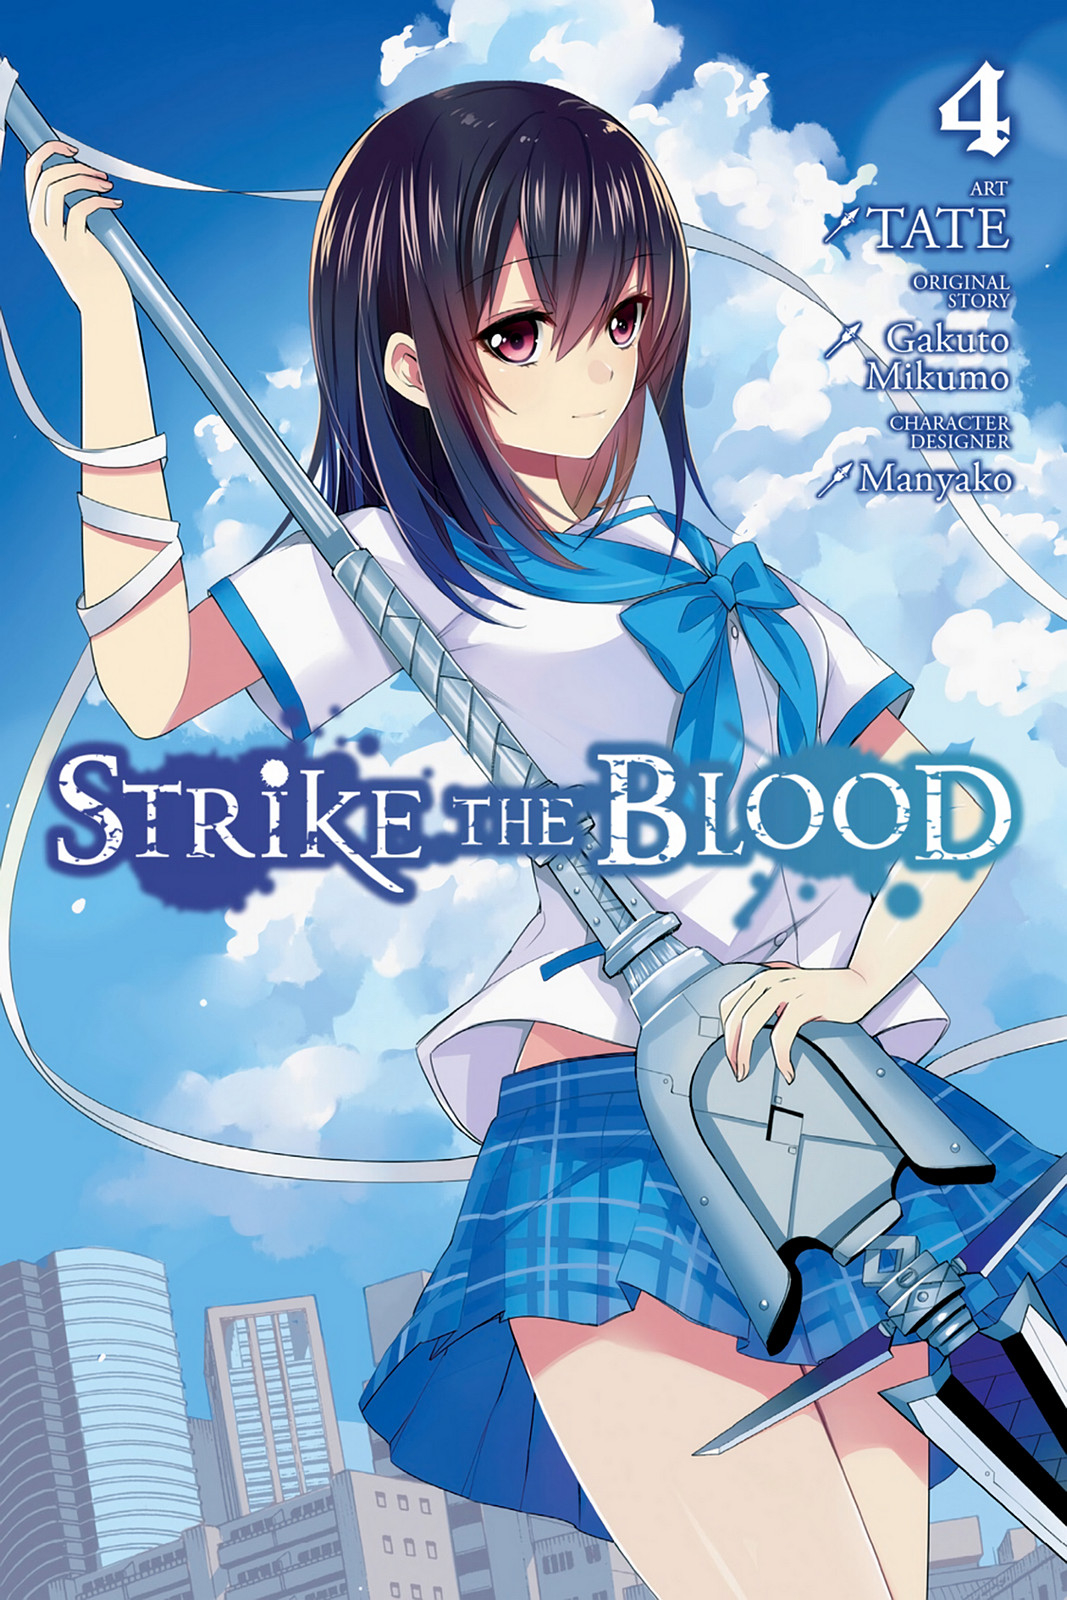 Strike the Blood Append Volume 4 Cover Illustration! : r/striketheblood